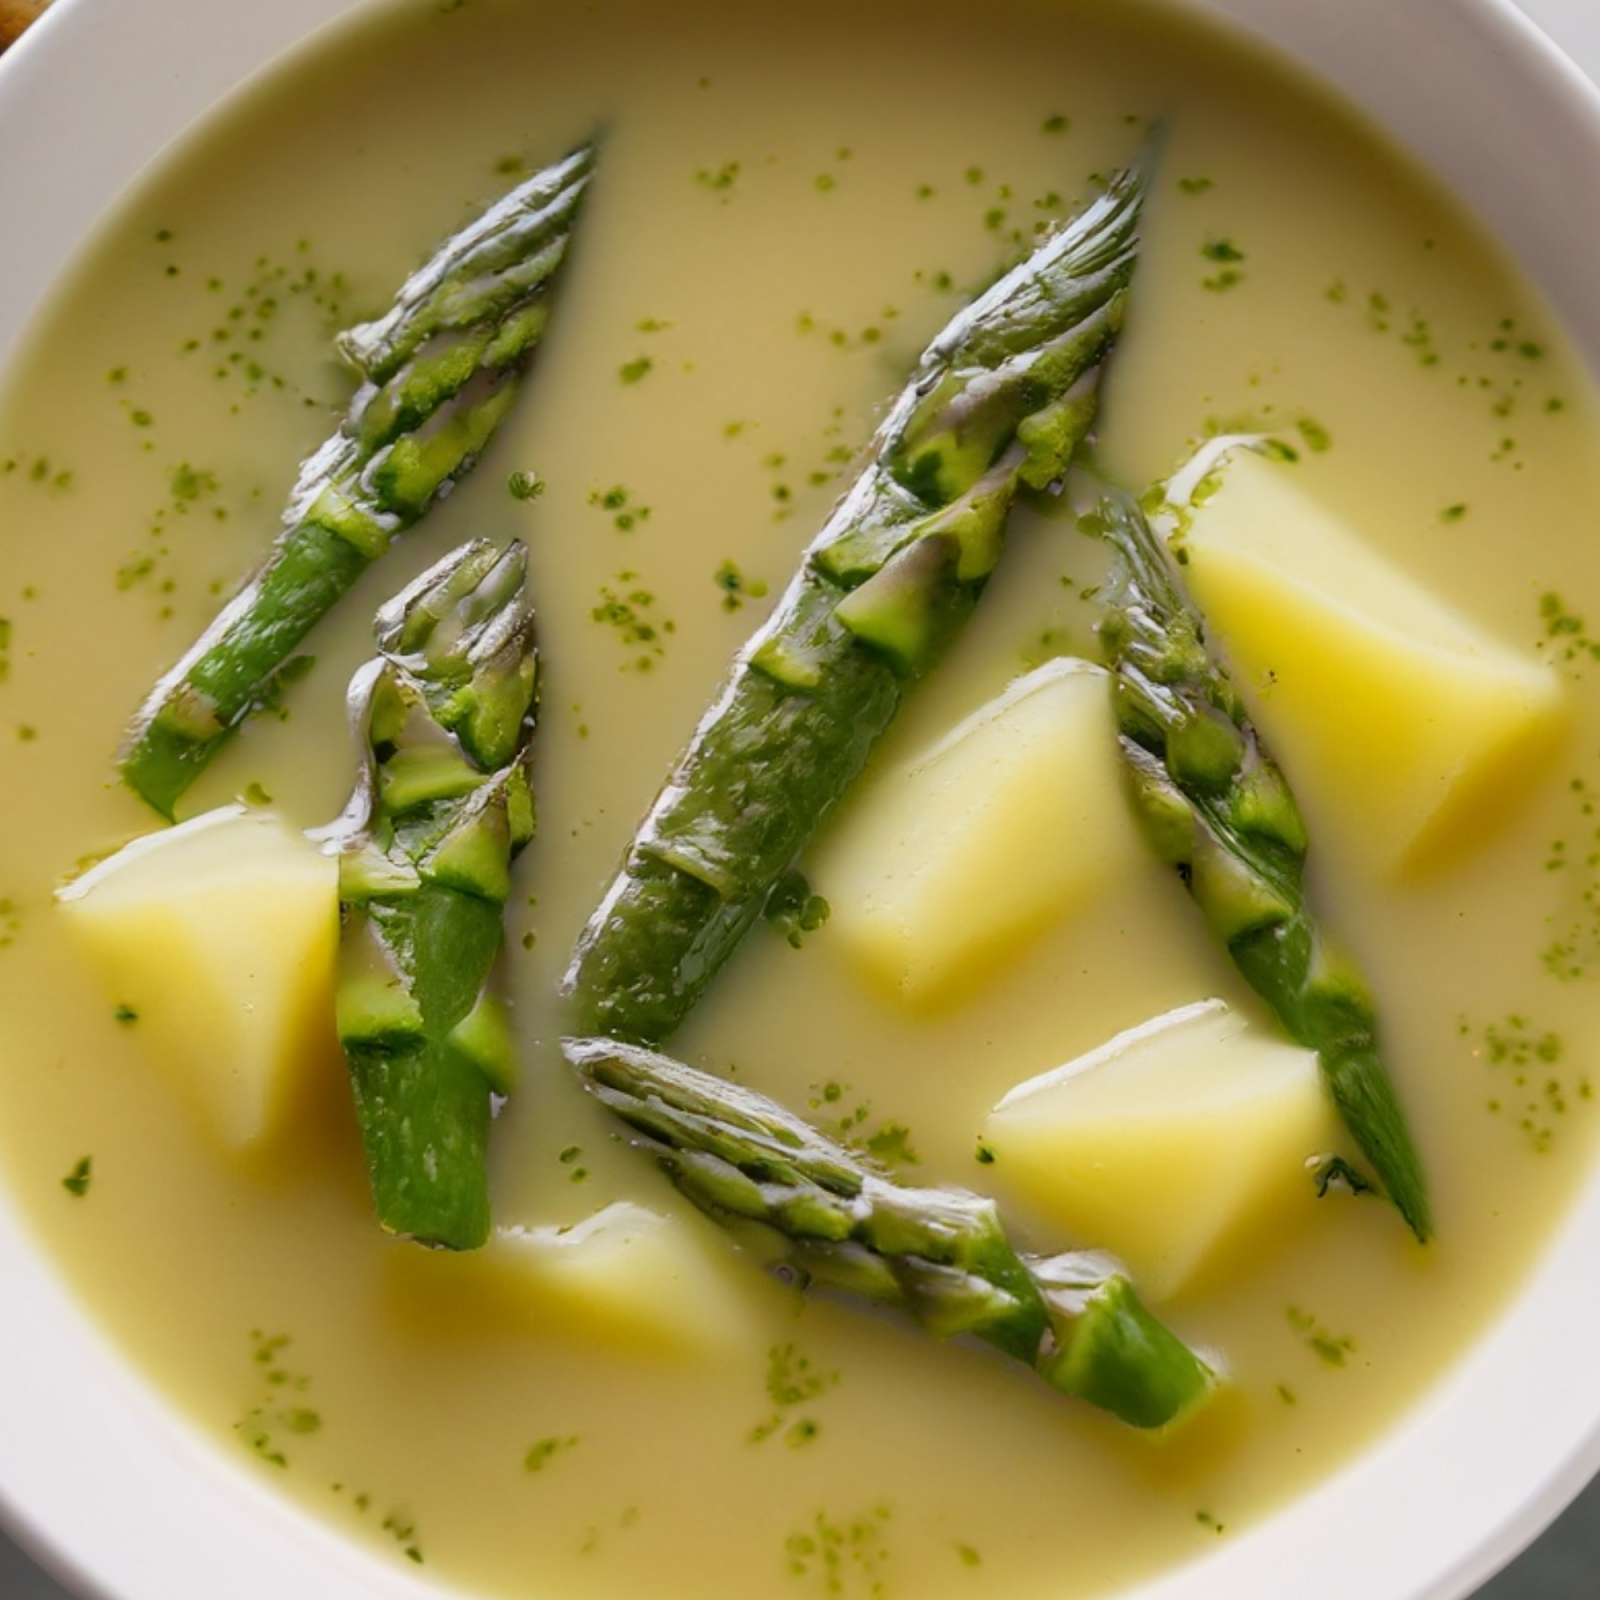  asparagus potato and herb soup recipe